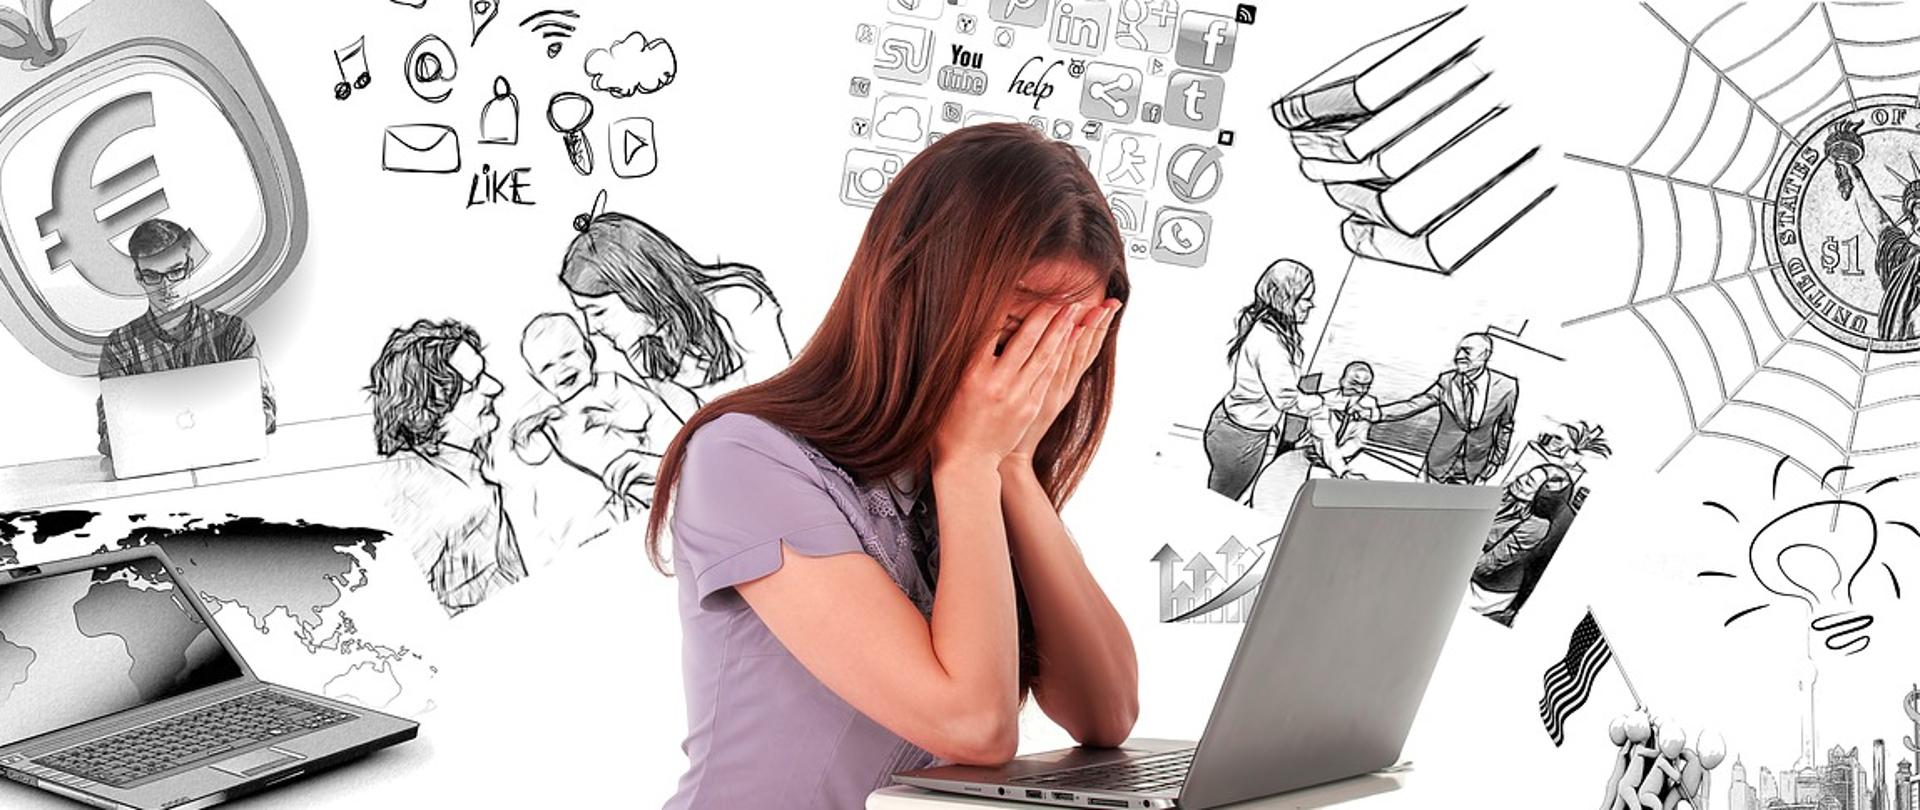 Kobieta siedząca nad laptopem z twarzą ukrytą w dłoniach, wokół jej głowy grafiki symbolizujące przytłaczające ją problemy